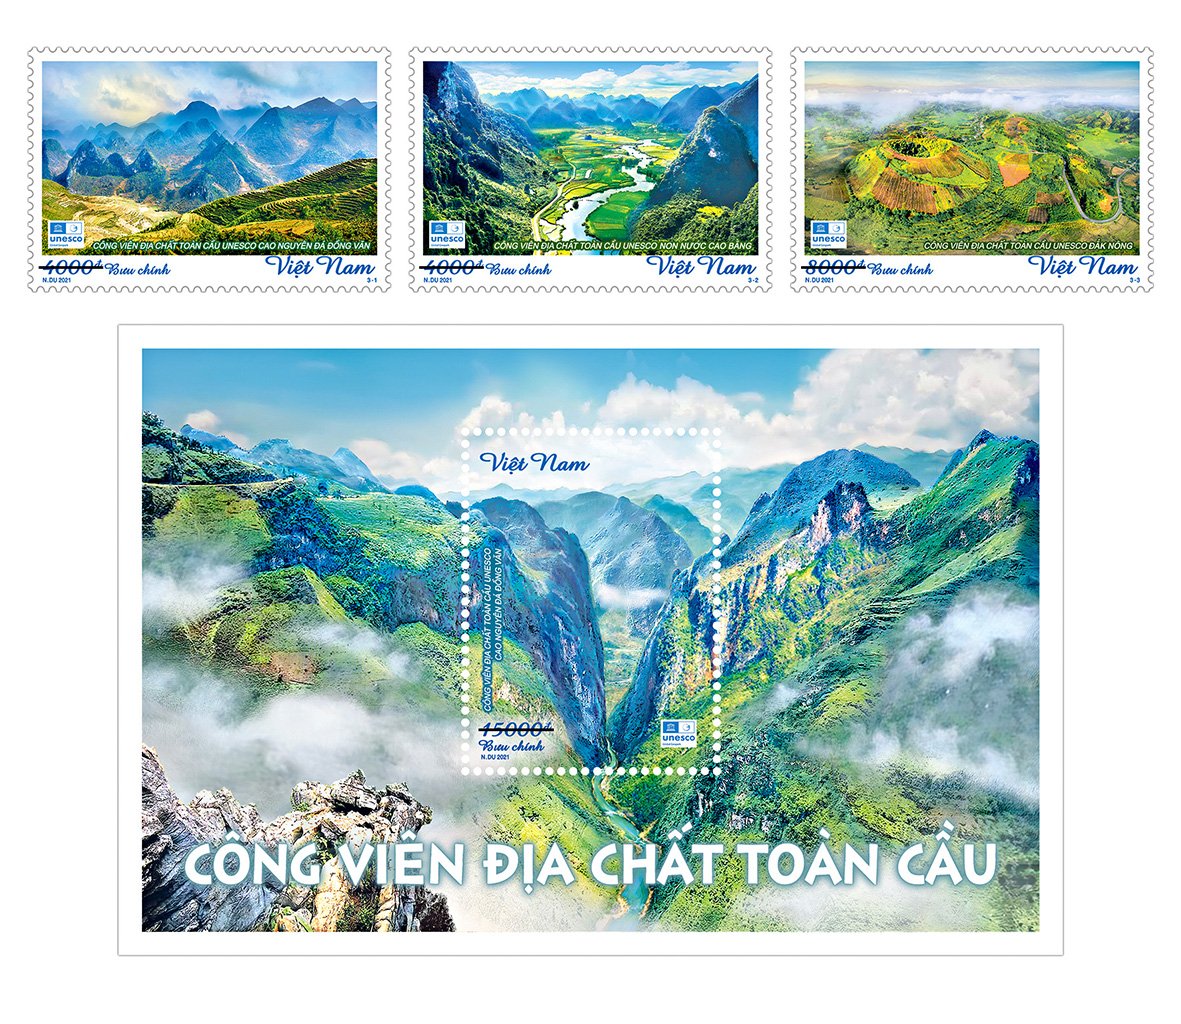 Bộ tem "Công viên địa chất toàn cầu" gồm 3 mẫu tem và 1 blốc